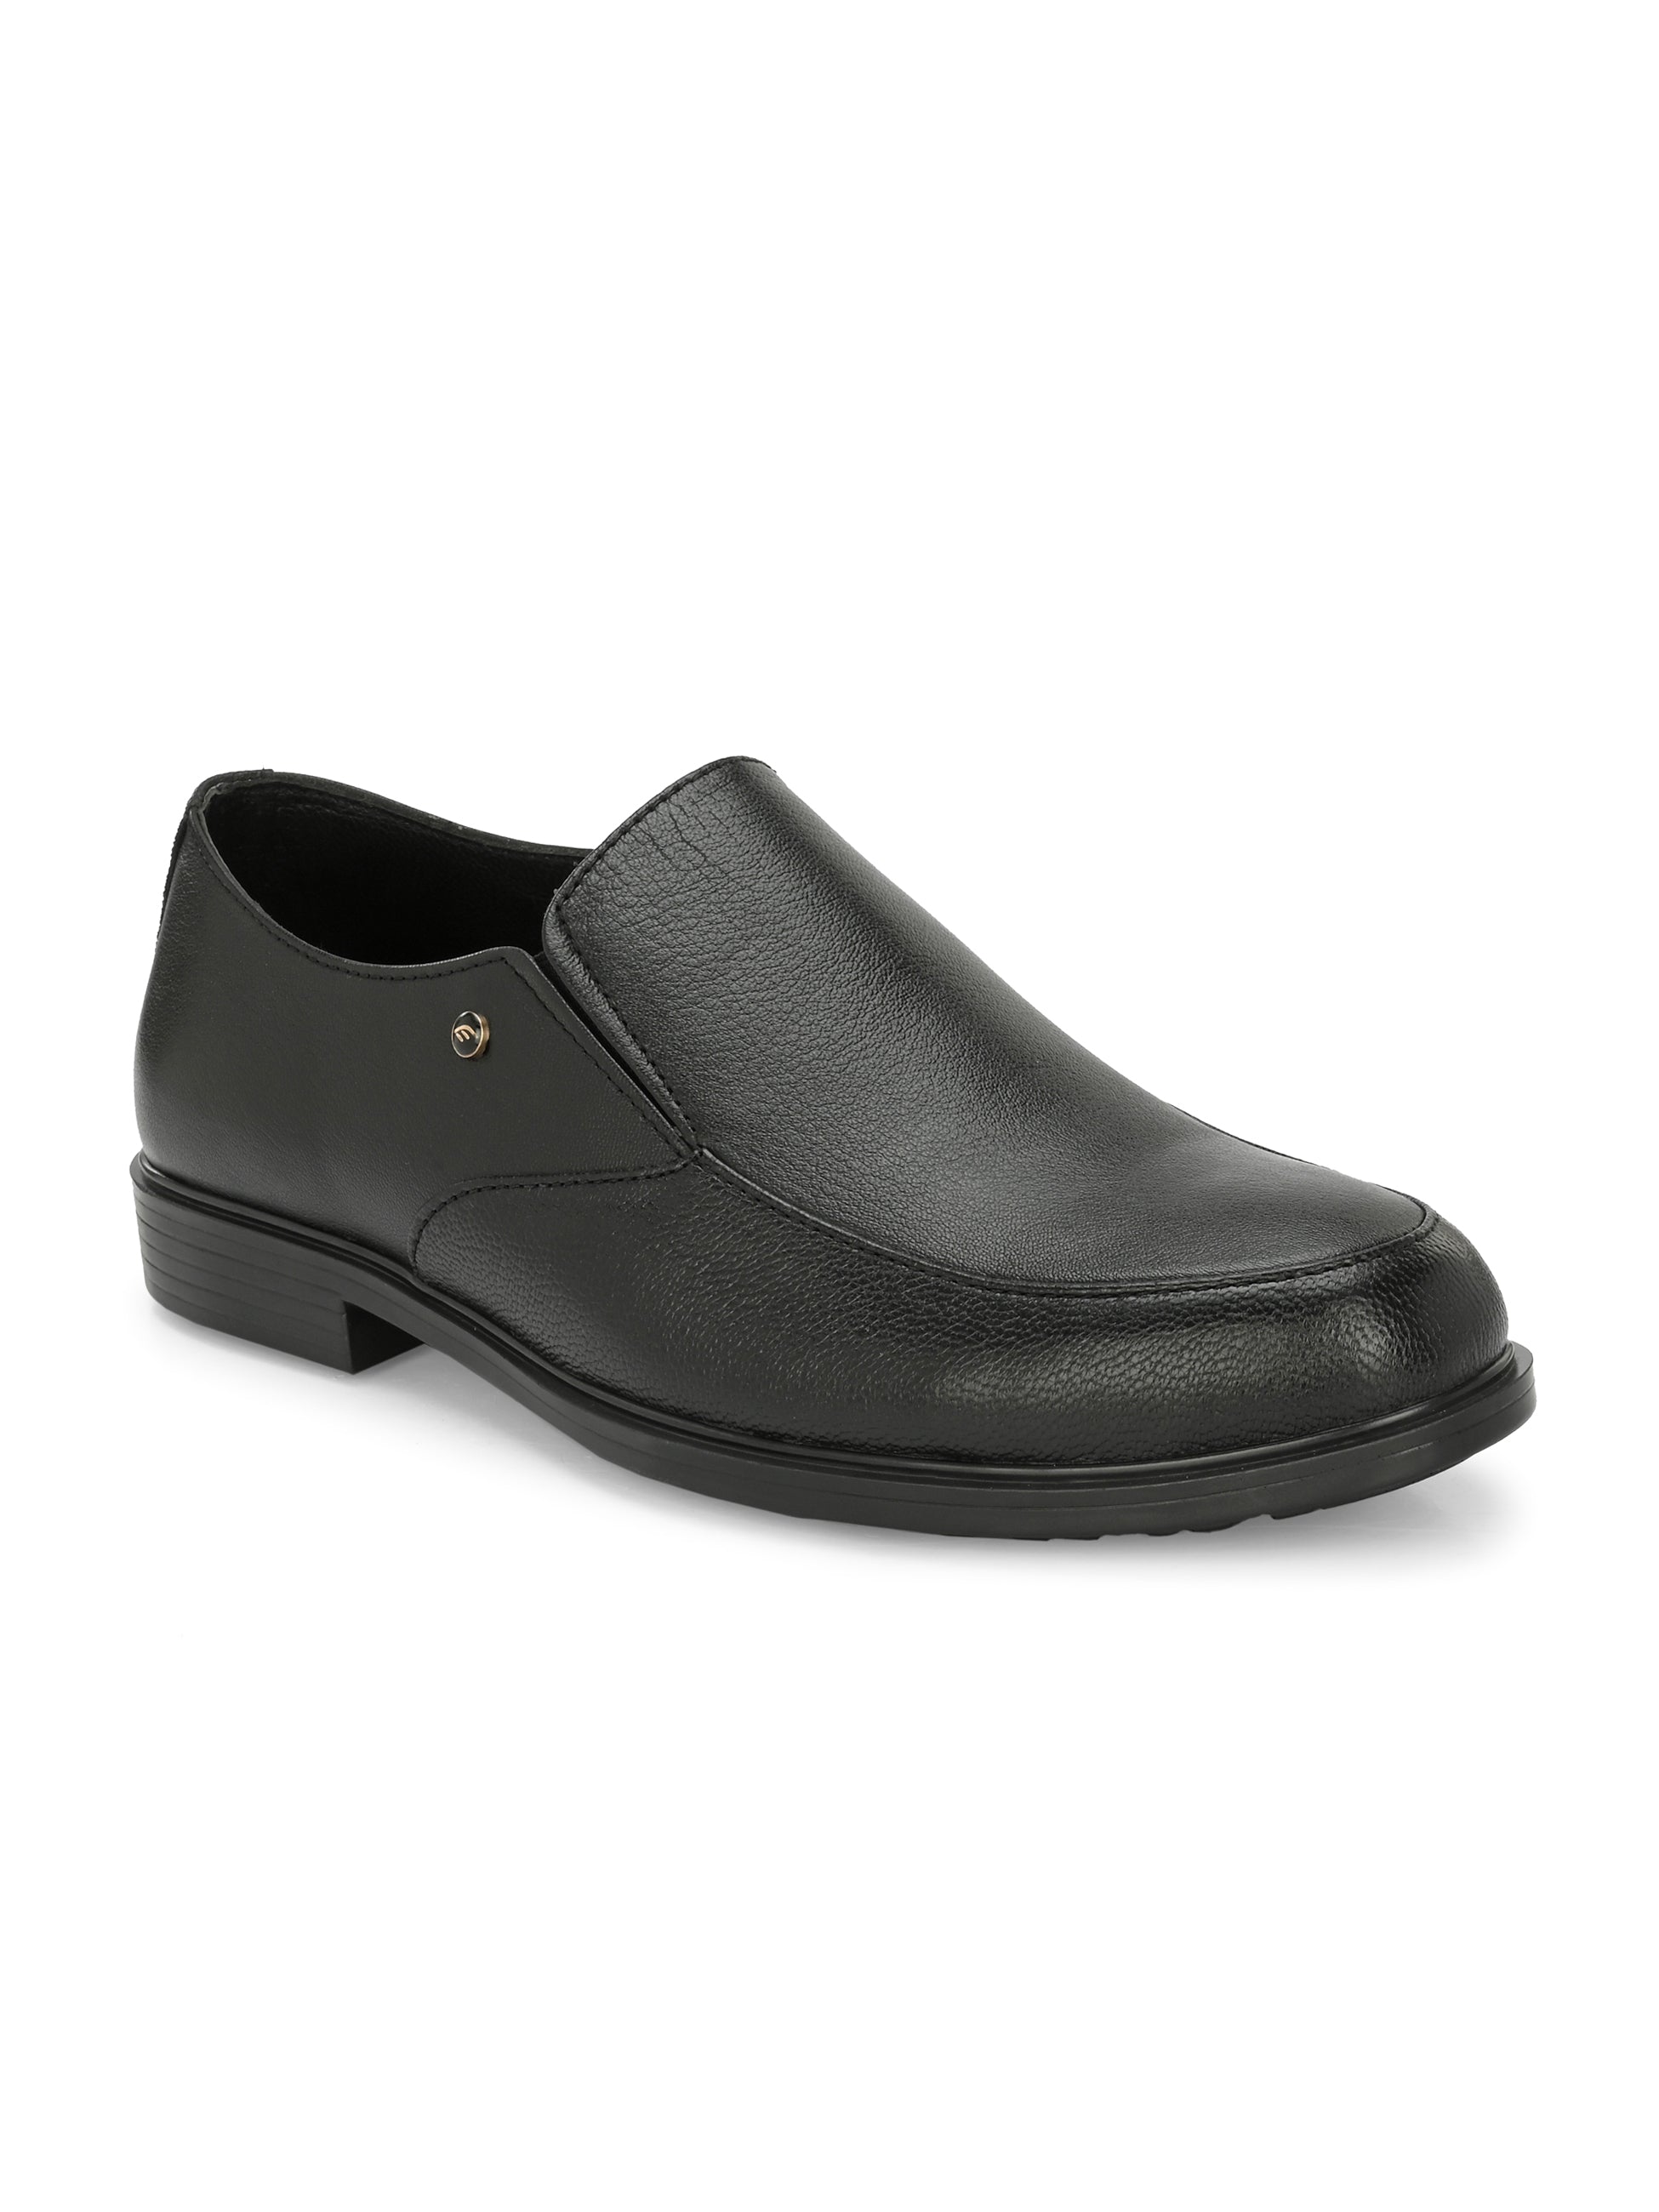 Egoss Formal Slip-On Shoes For Men